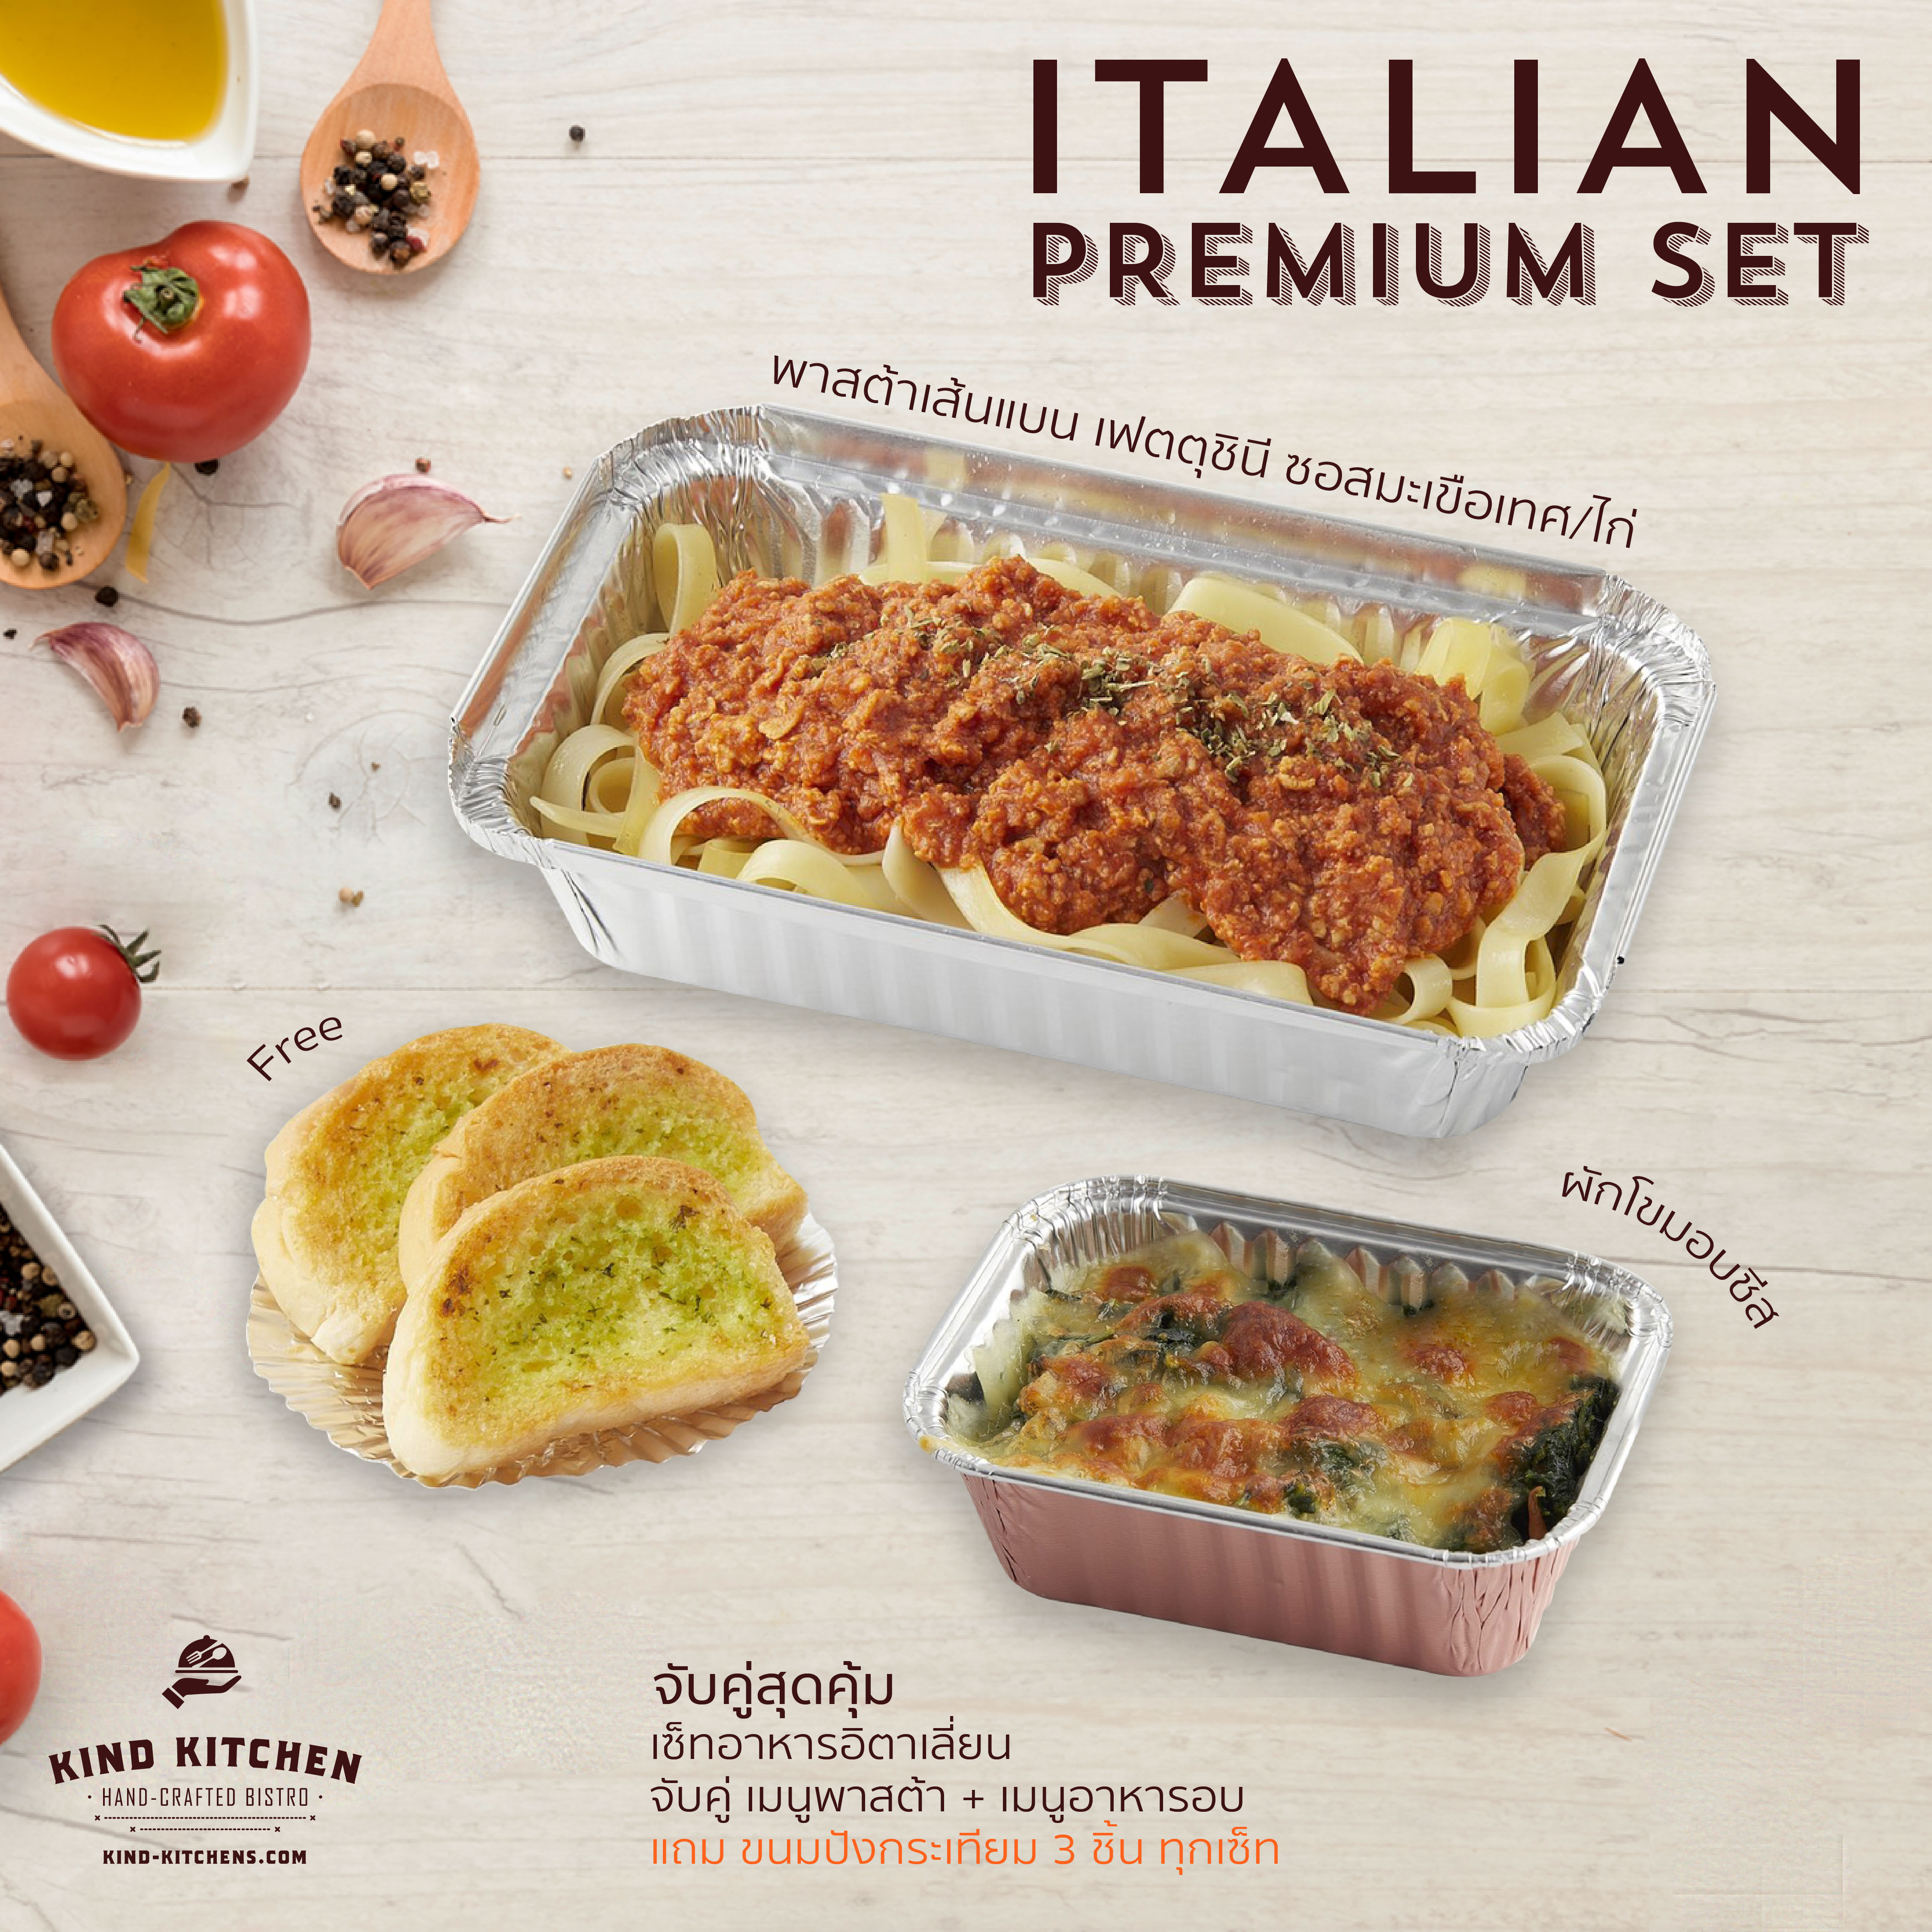 เซ็ทอาหารอิตาเลี่ยน Italian Premium Set_พาสต้าเส้นแบน เฟตตุชินี ซอสมะเขือเทศ/ไก่ + ผักโขมอบชีส